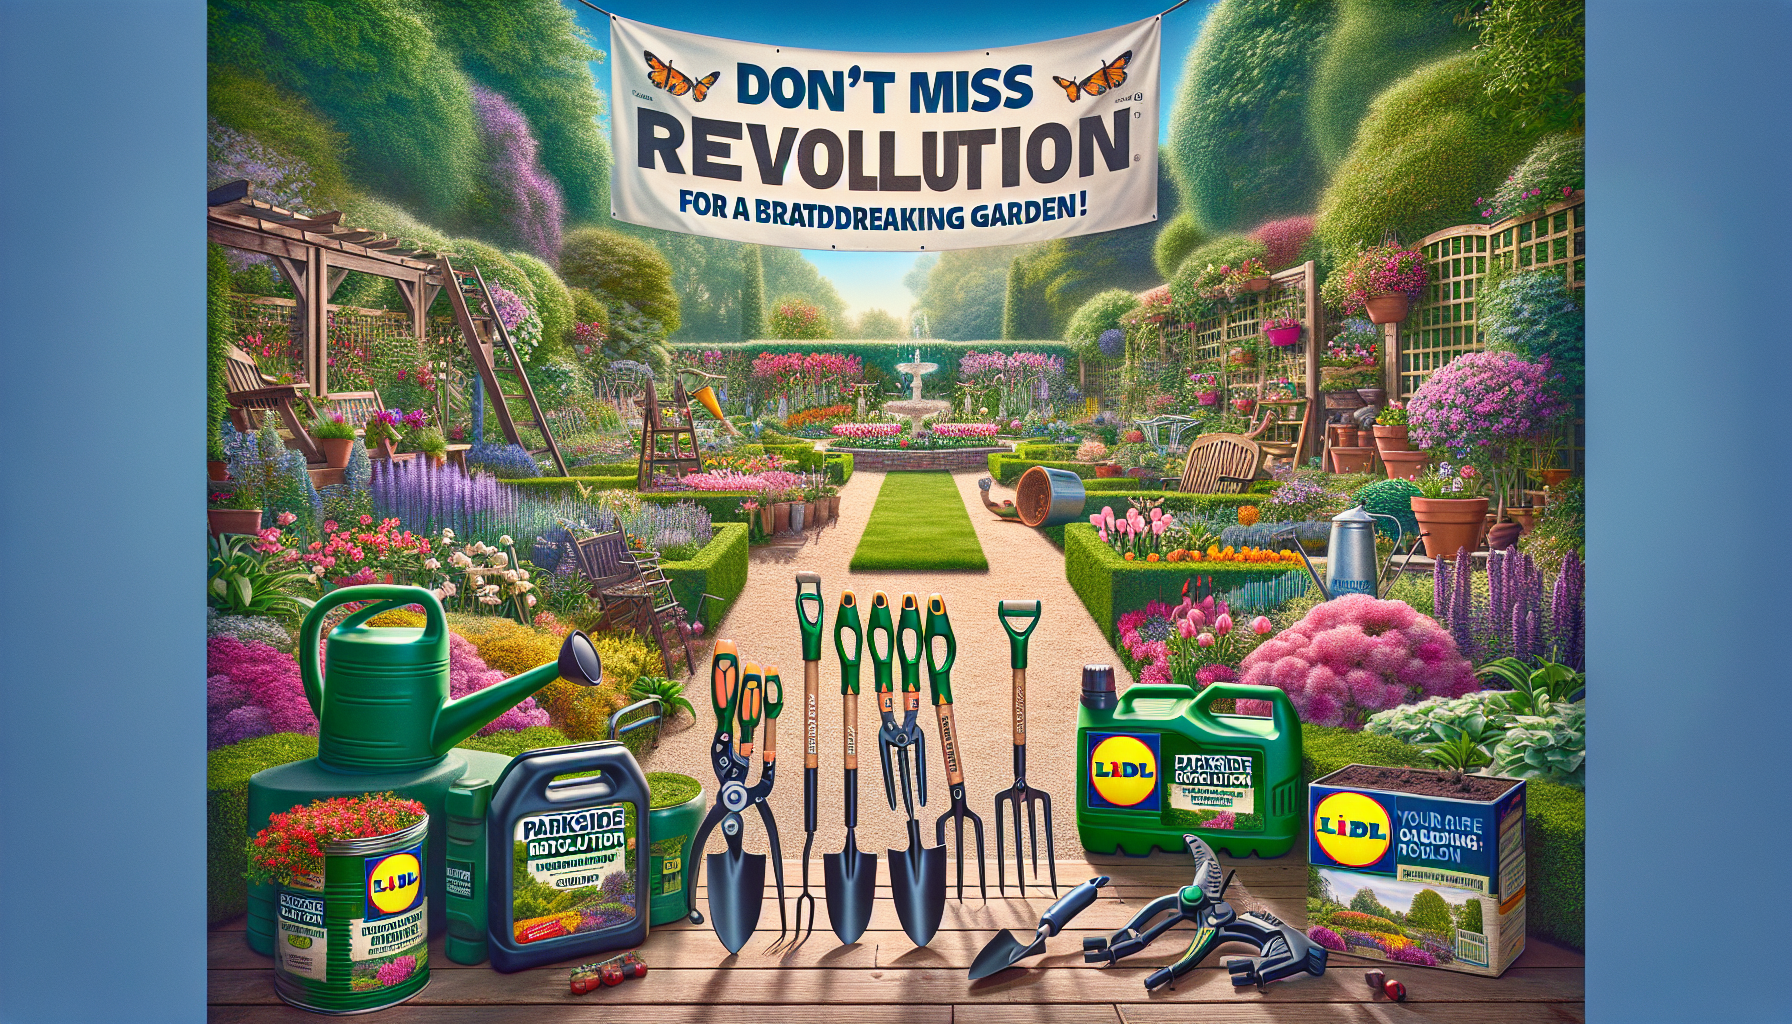 découvrez les 2 outils de jardinage parkside chez lidl. sont-ils les révolutionnaires qu'il vous faut pour votre jardin ? ne les manquez pas avant qu'il ne soit trop tard !